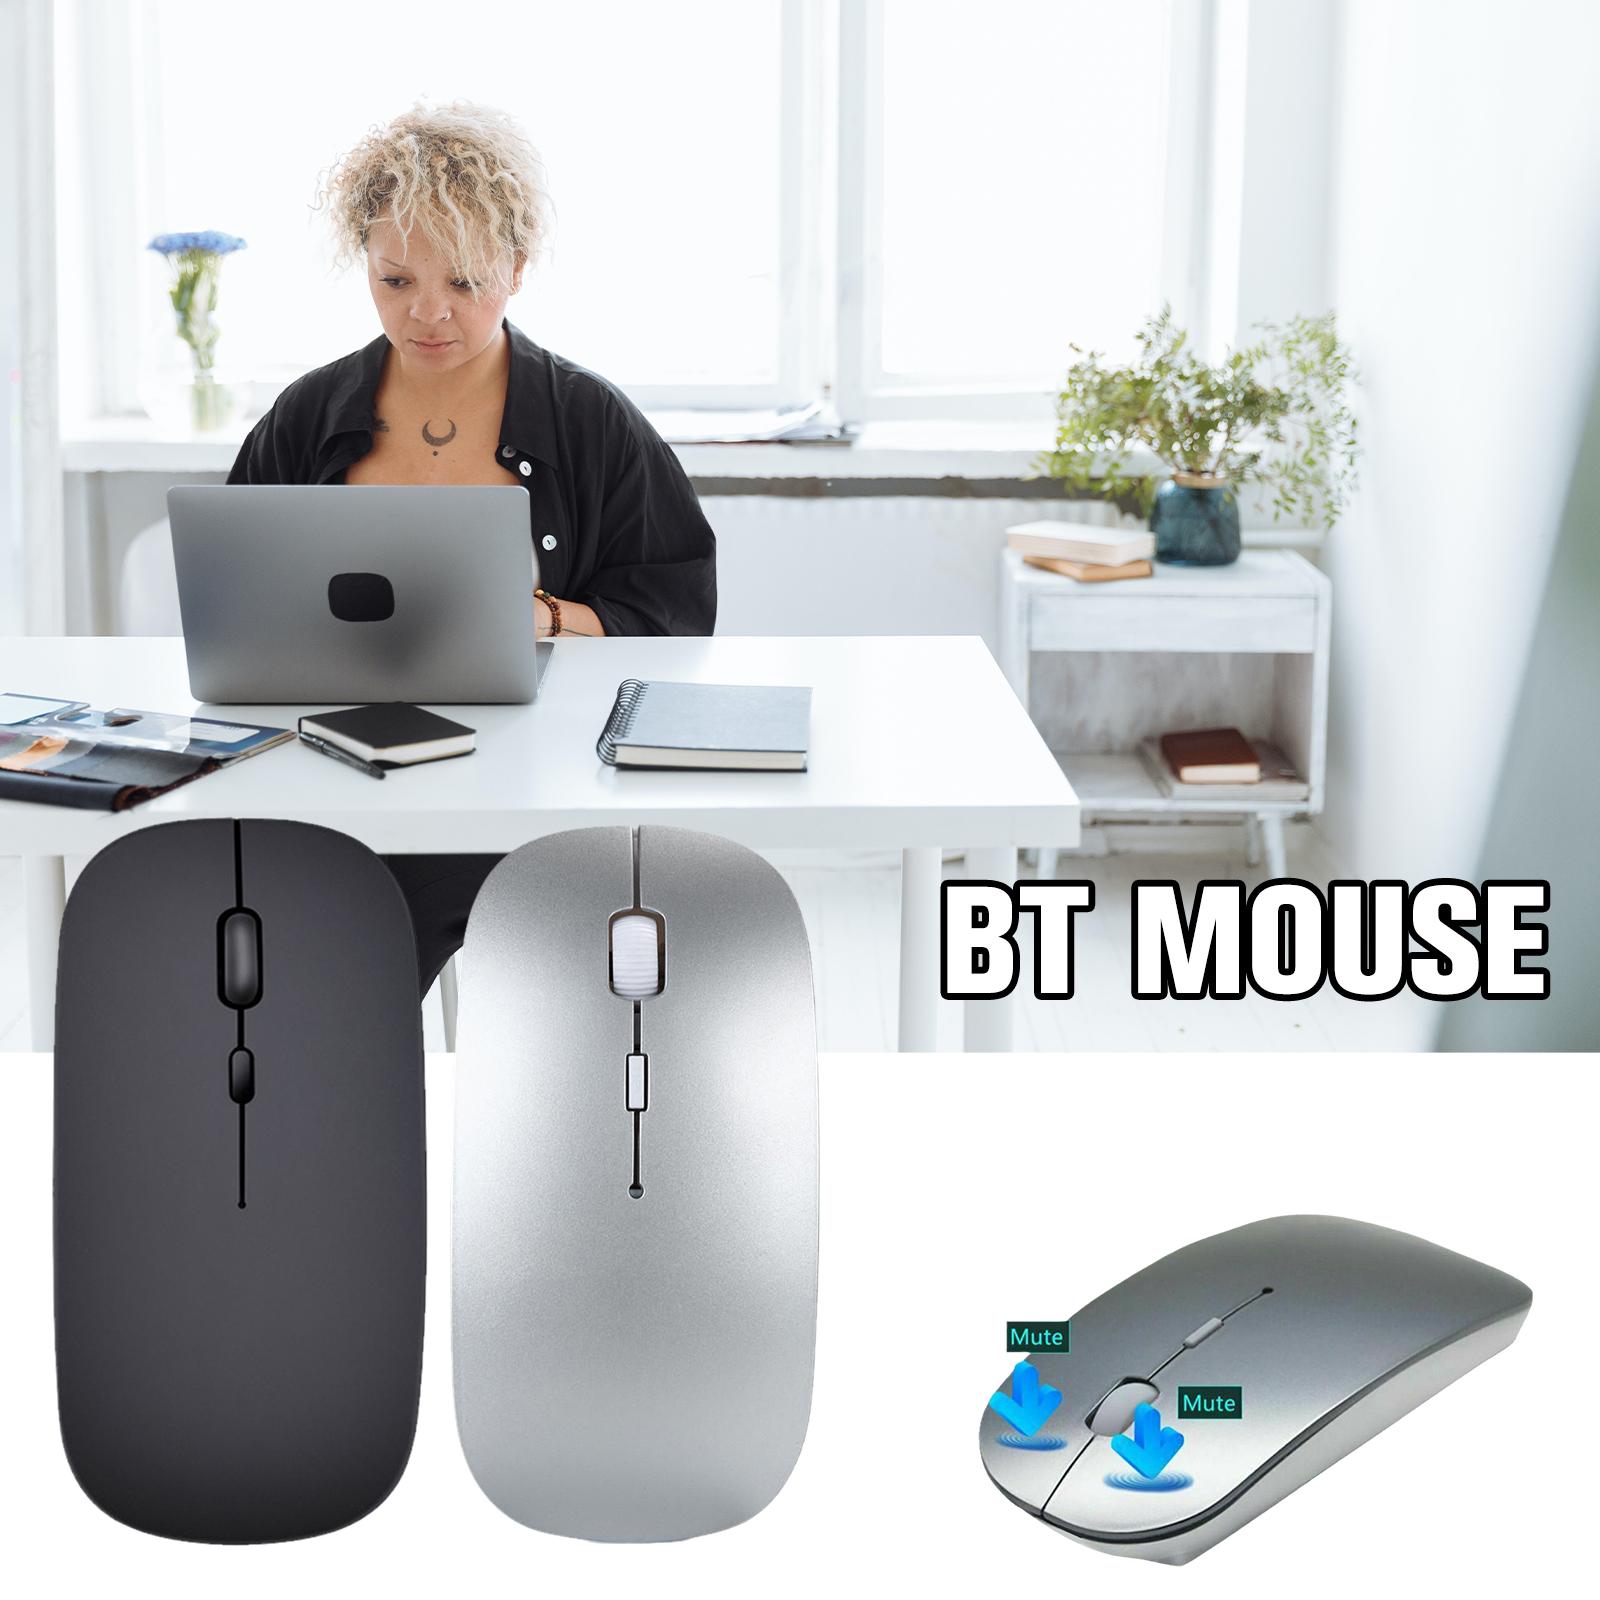 Nouvelle souris sans fil Rechargeable Bluetooth 2.4GHz adaptateur USB double Mode pour ordinateur portable bureau à domicile souris ergonomique